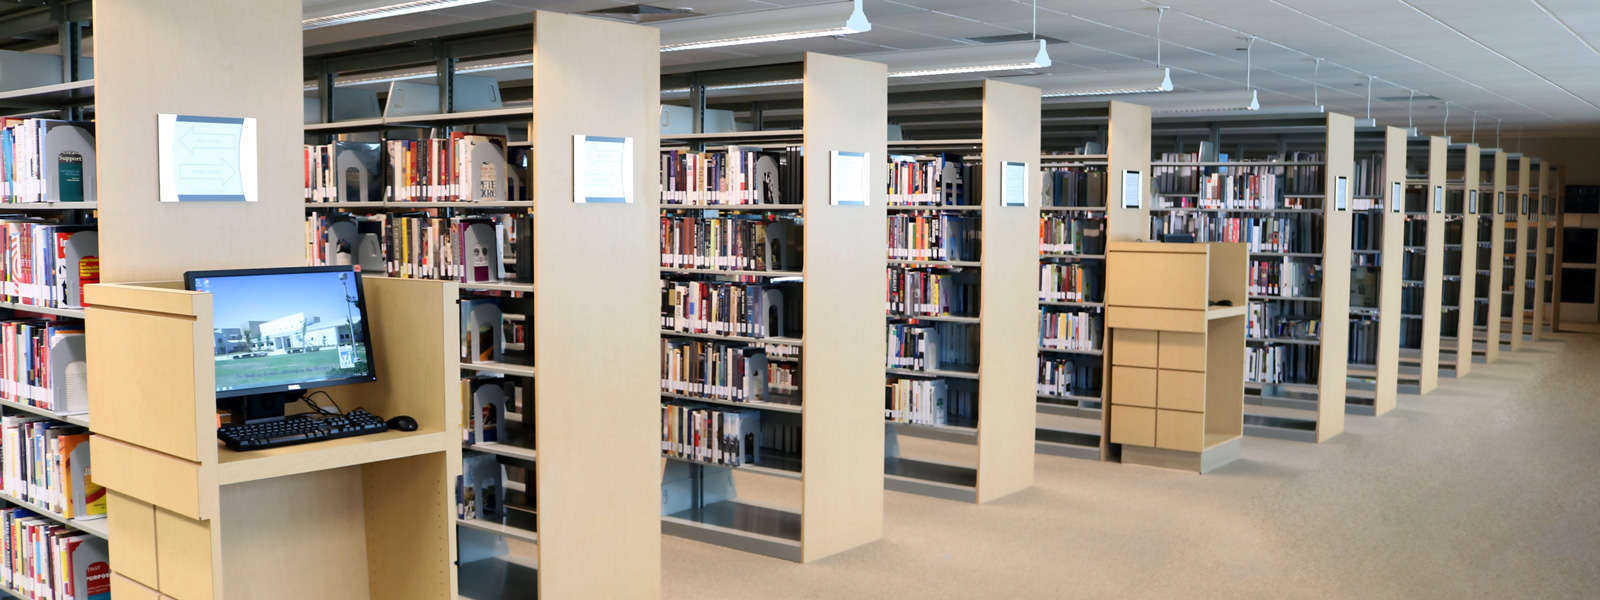 CCC library bookshelves